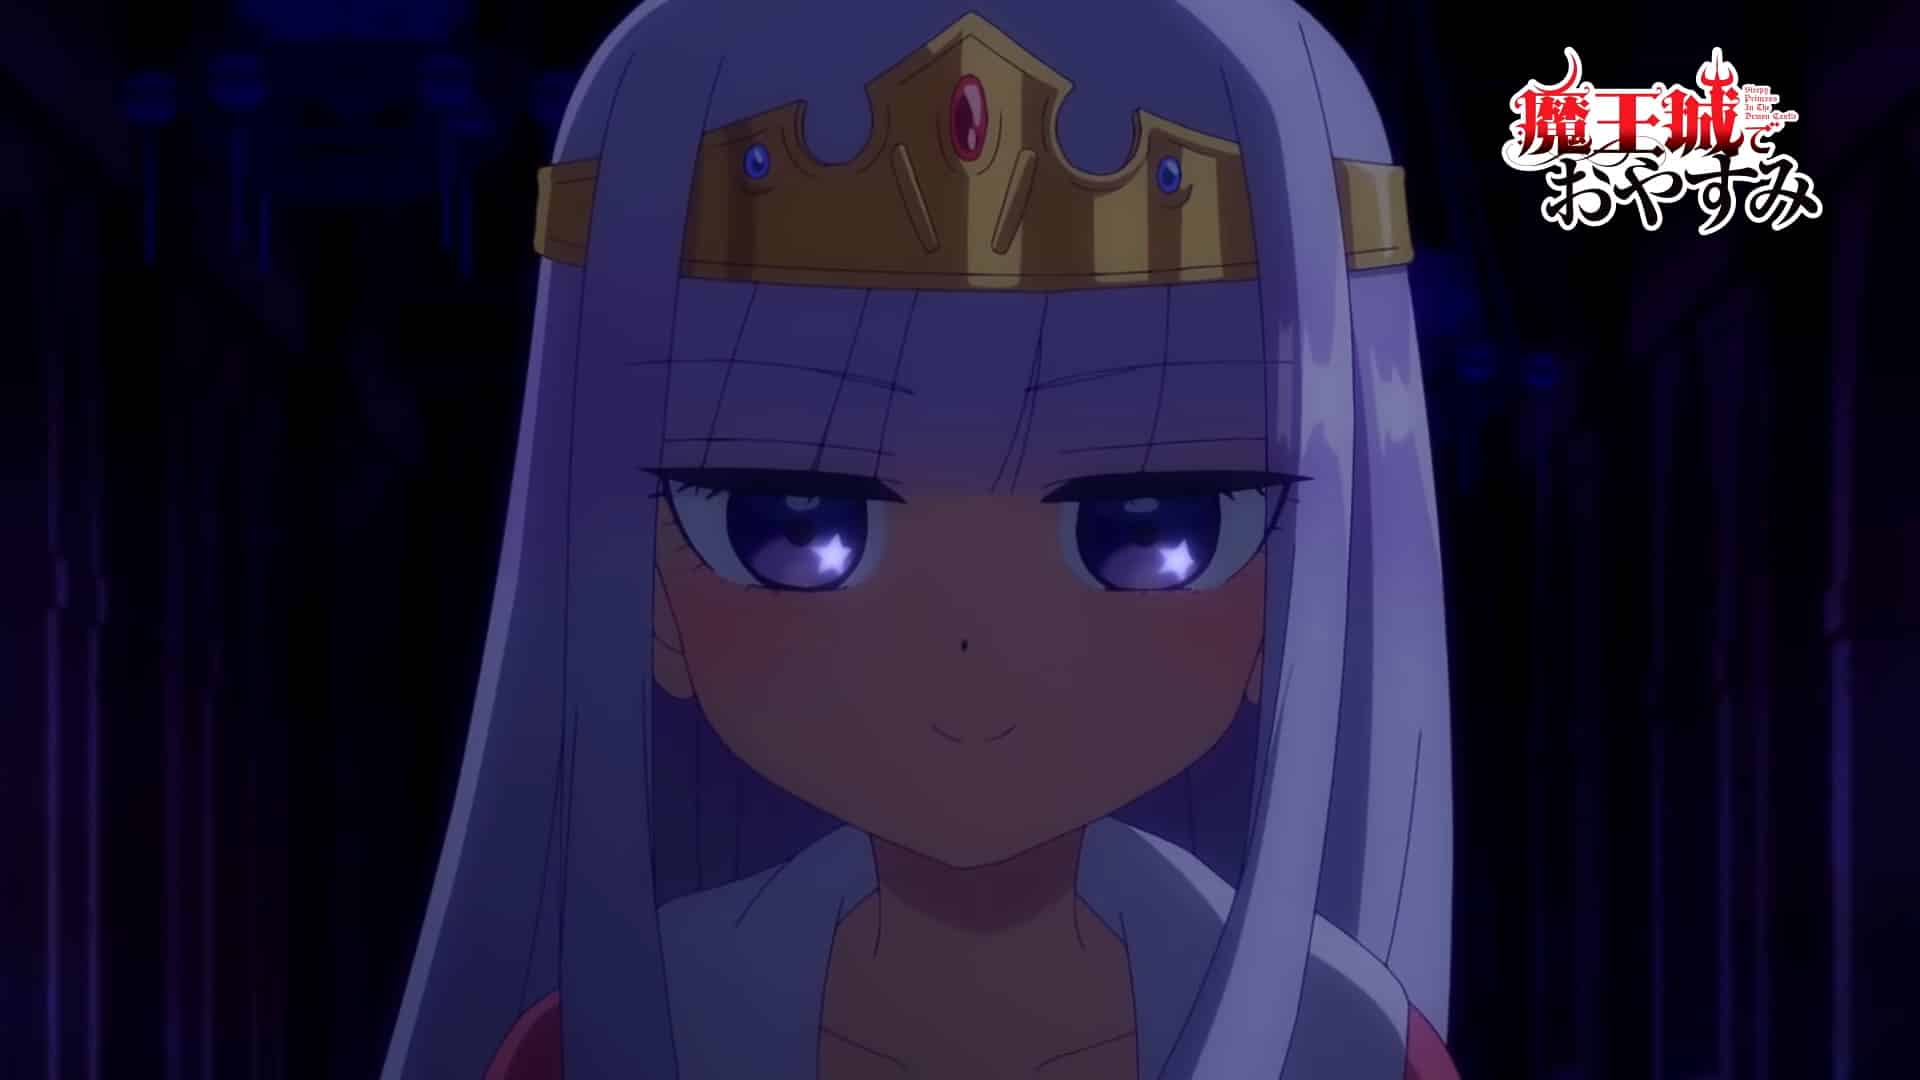 Trailer vidéo pour l'anime Sleepy Princess in the Demon Castle